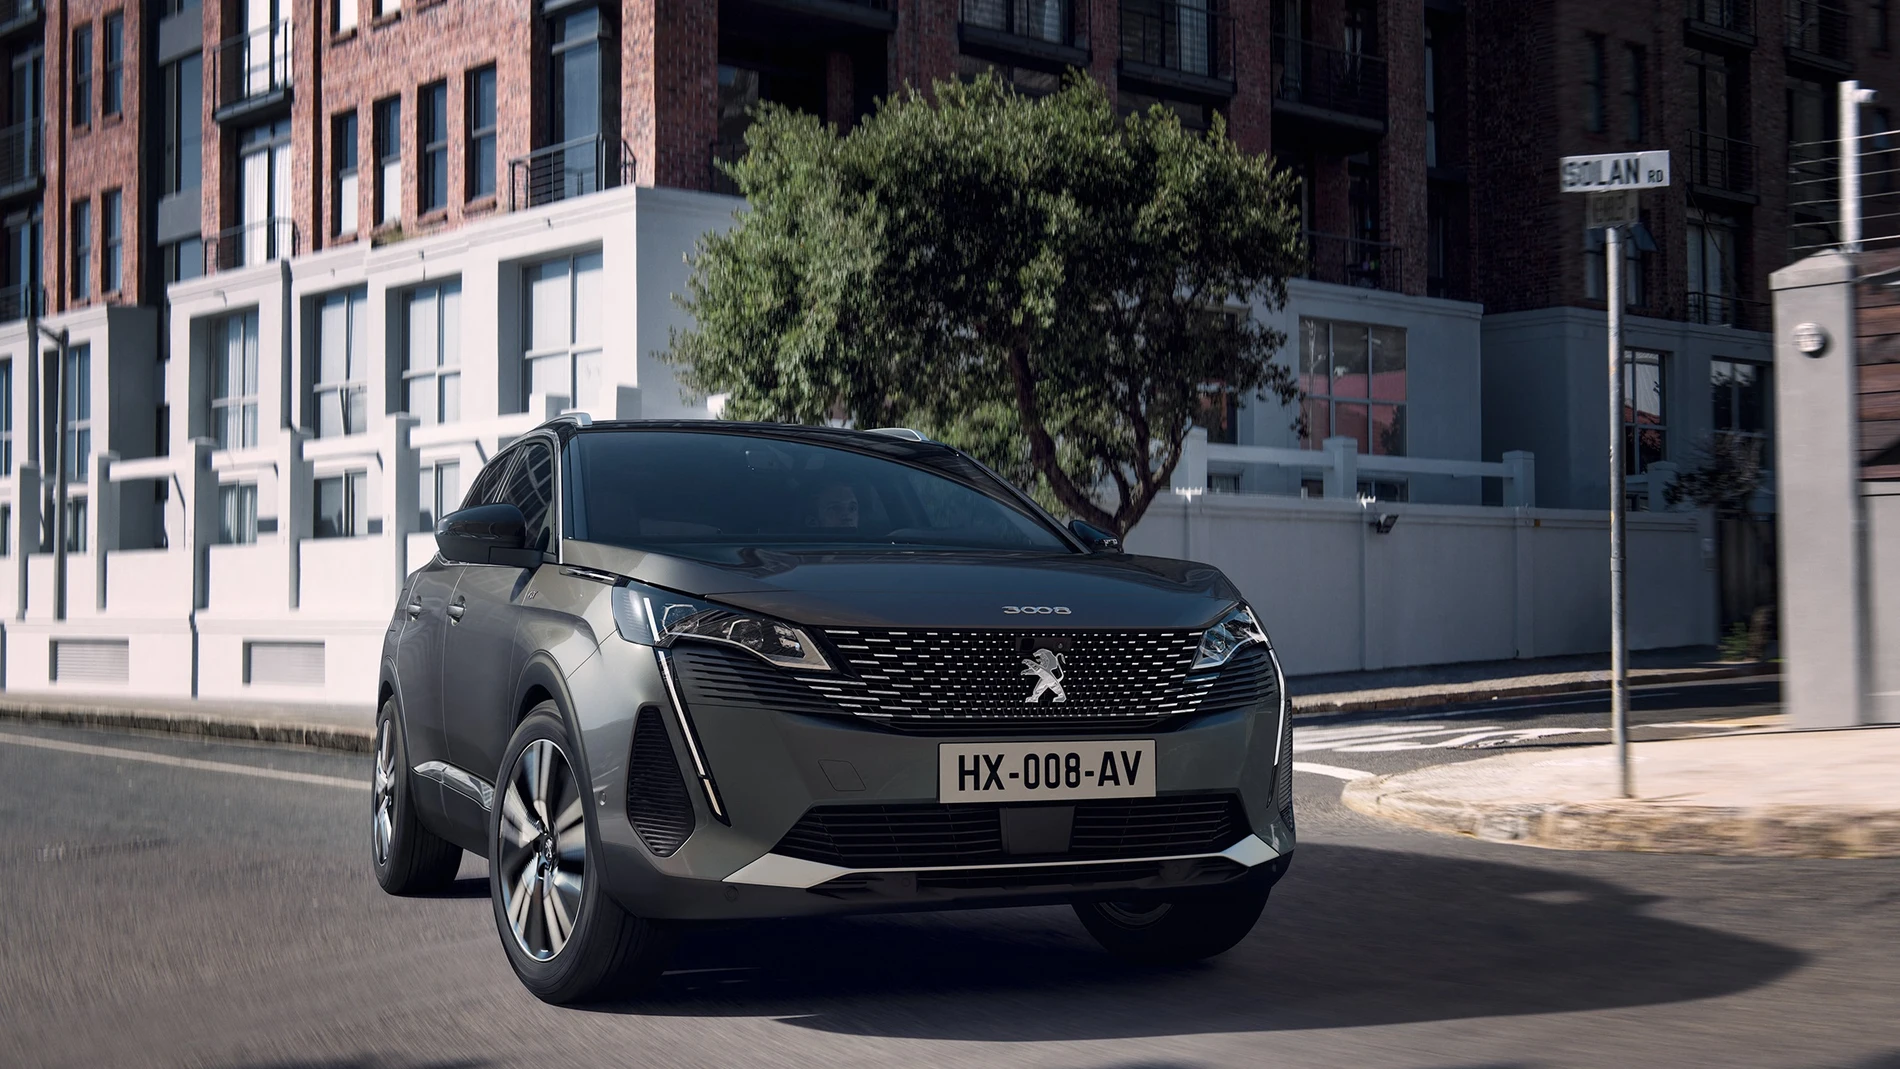 Economía/Motor.- Peugeot lanzará a finales de año el nuevo 3008, con versiones híbridas enchufables, gasolina y diésel